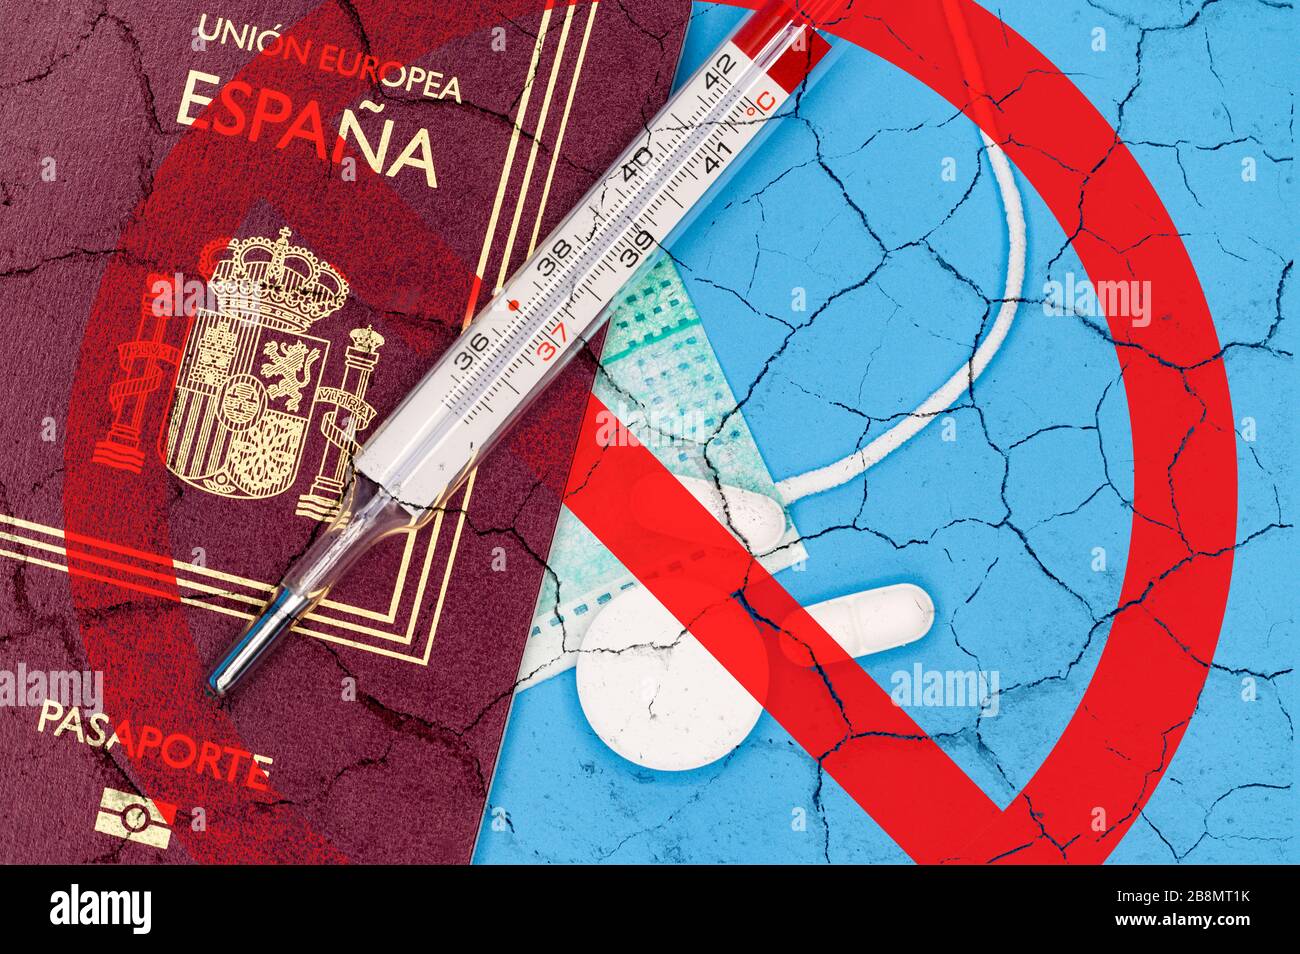 Spanien Reisebeschränkungen. Stornieren Sie die geplante Reise nach Spanien oder die Einschränkung des Konzepts der spanischen Reisenden aufgrund der Ausbreitung der Coronavirus-Infektion. Quarantäne für die Kovid-19-Pandemie. Stockfoto